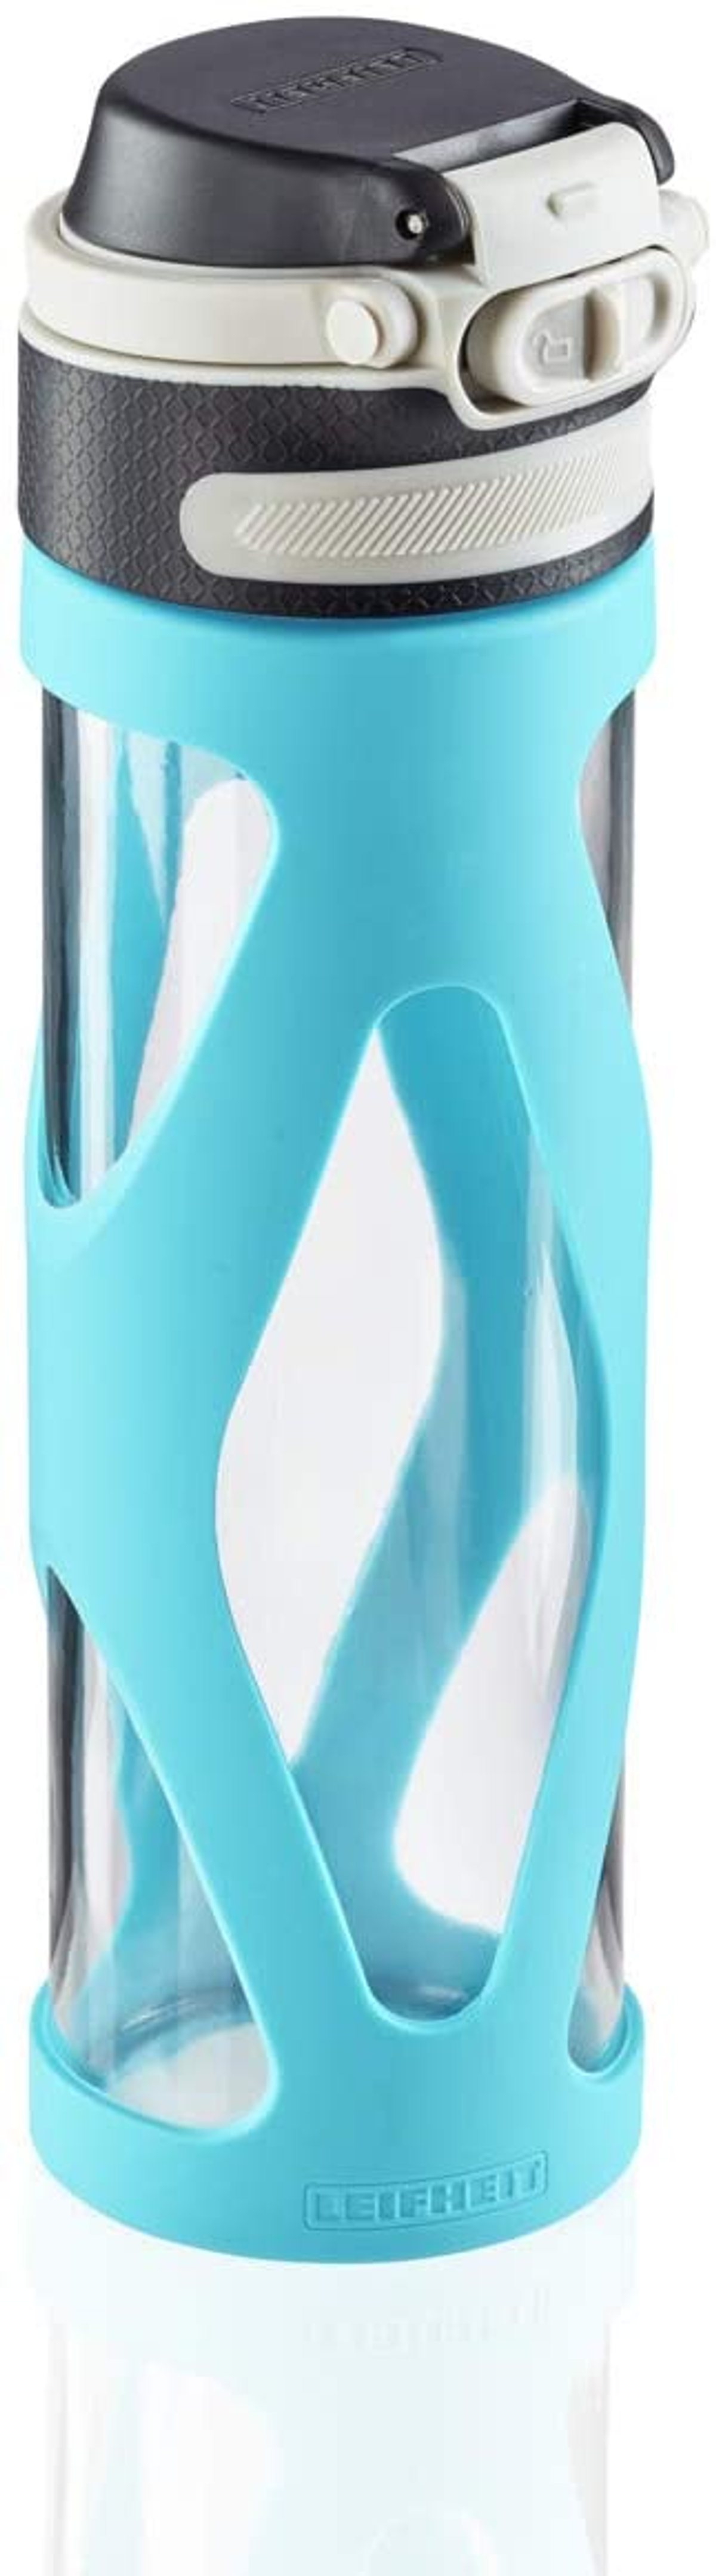 LEIFHEIT 3259 TRINKFLASCHE GLAS FLIP Wasserblau WASSERBLAU 600ML Trinkflasche